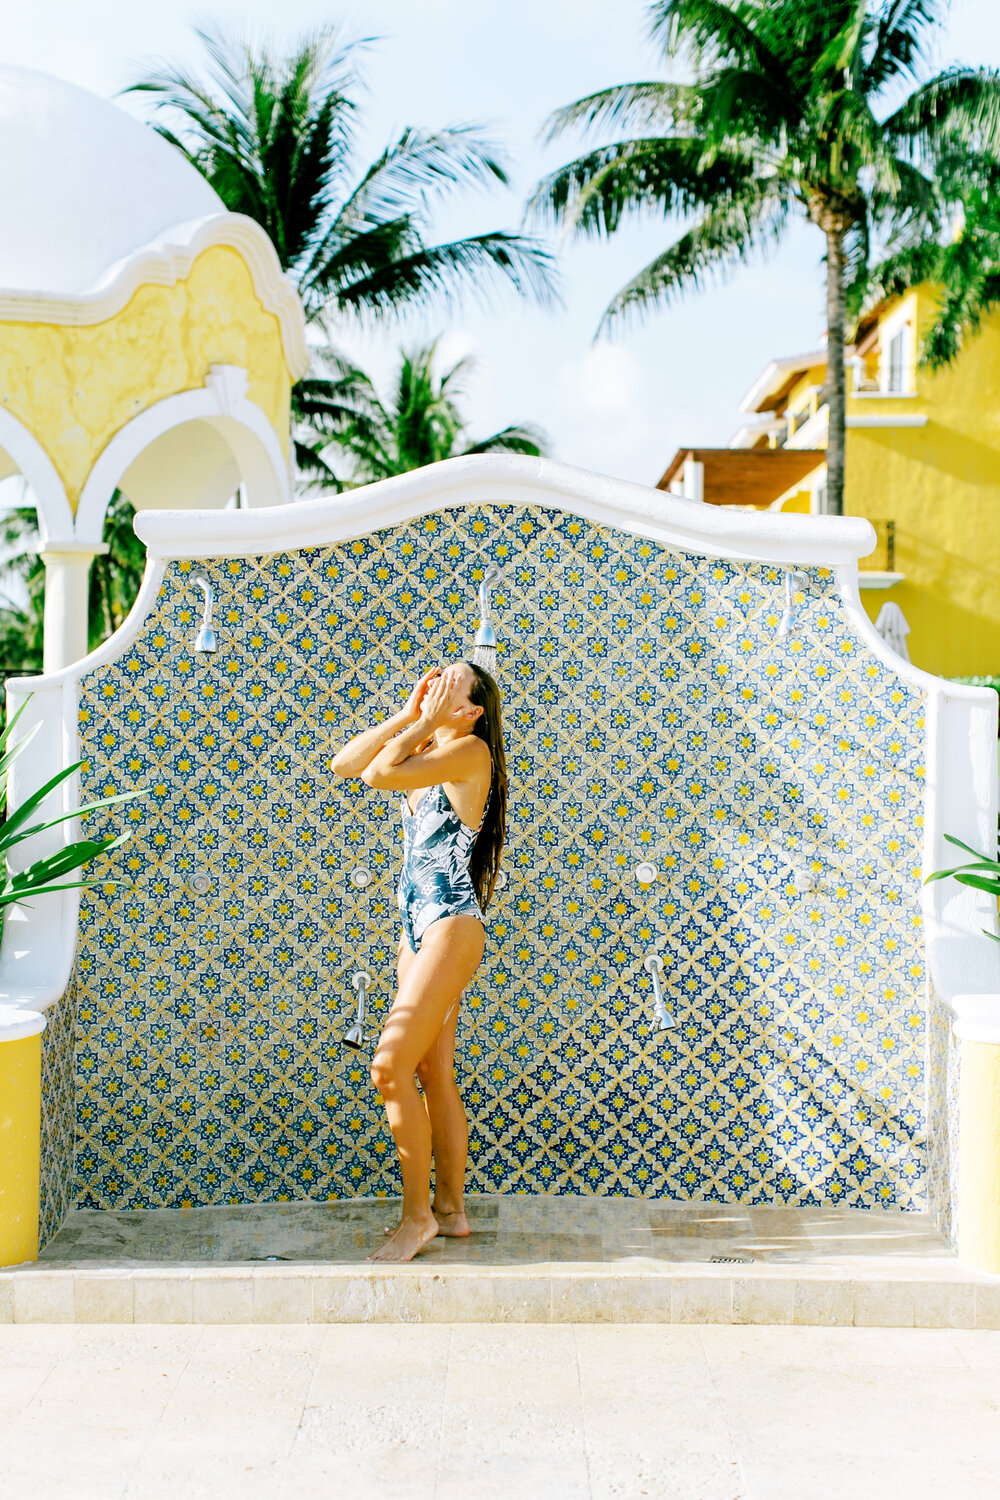 All-Inclusive Secrets Capri in Riviera, Cancun, Mexico / where to stay in cancun